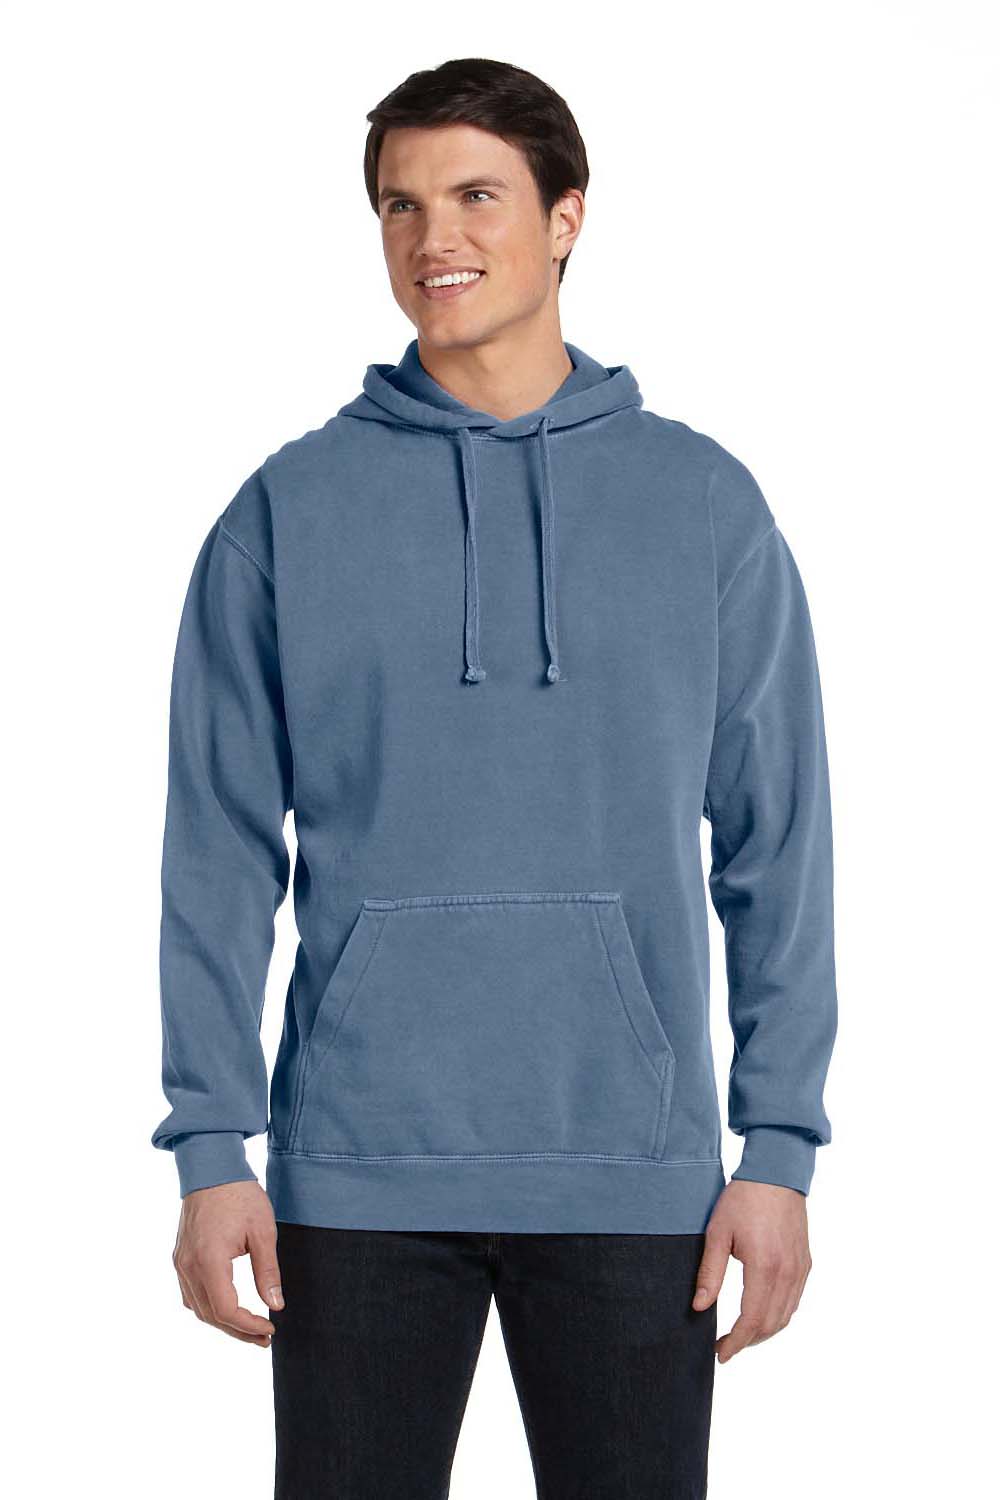 Comfort Colors 1567 Mens Hooded Sweatshirt Hoodie Blue Jean Front